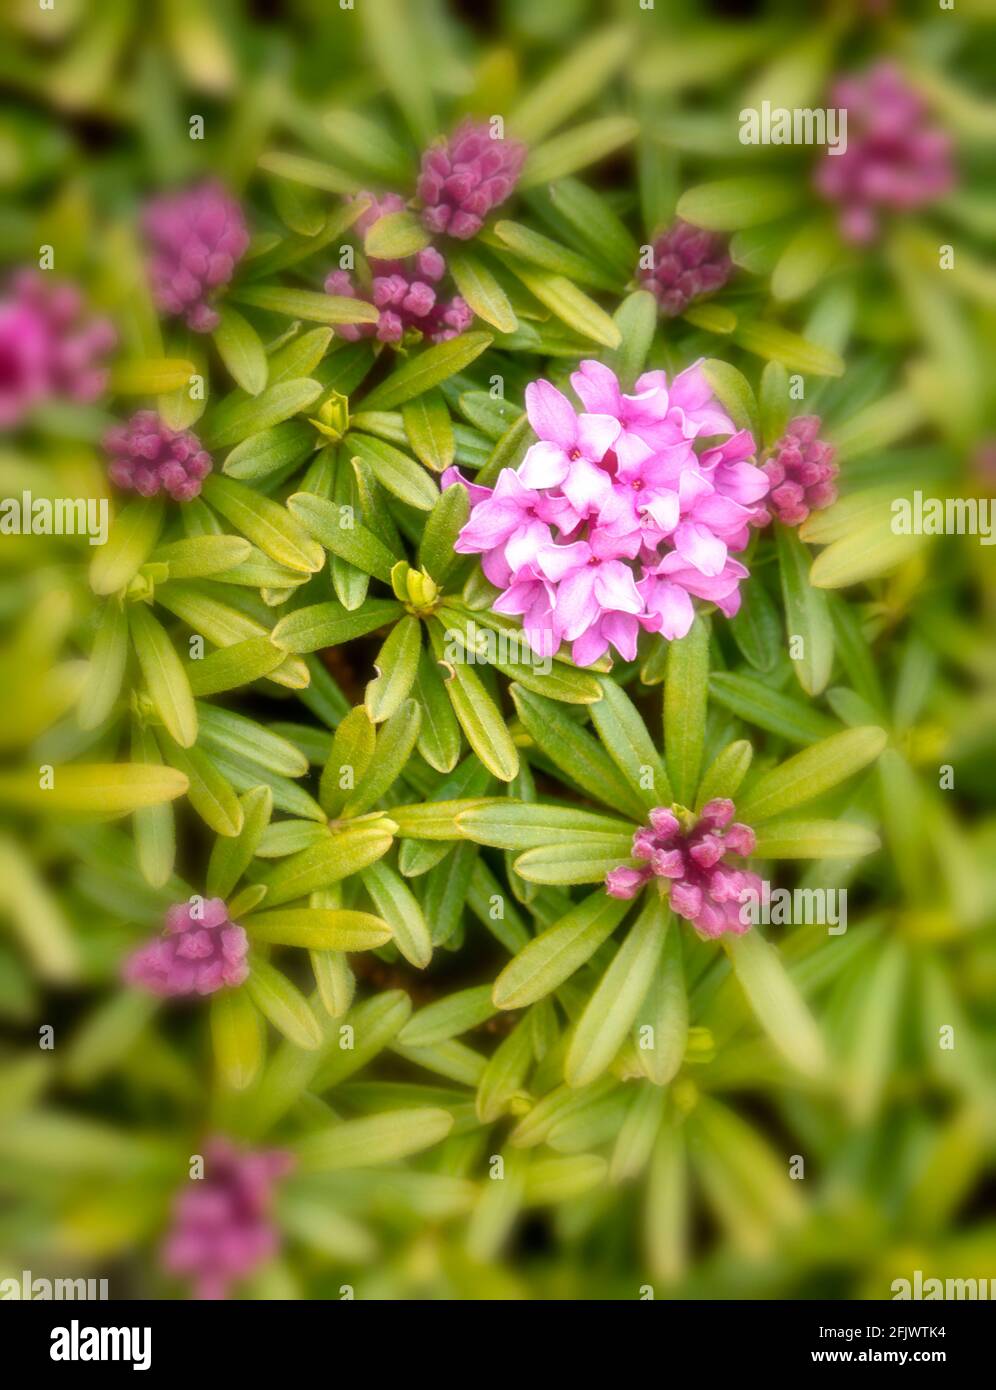 Daphne × susannae 'Tichborne', daphne 'Tichborne',  close-up natural plant portrait Stock Photo